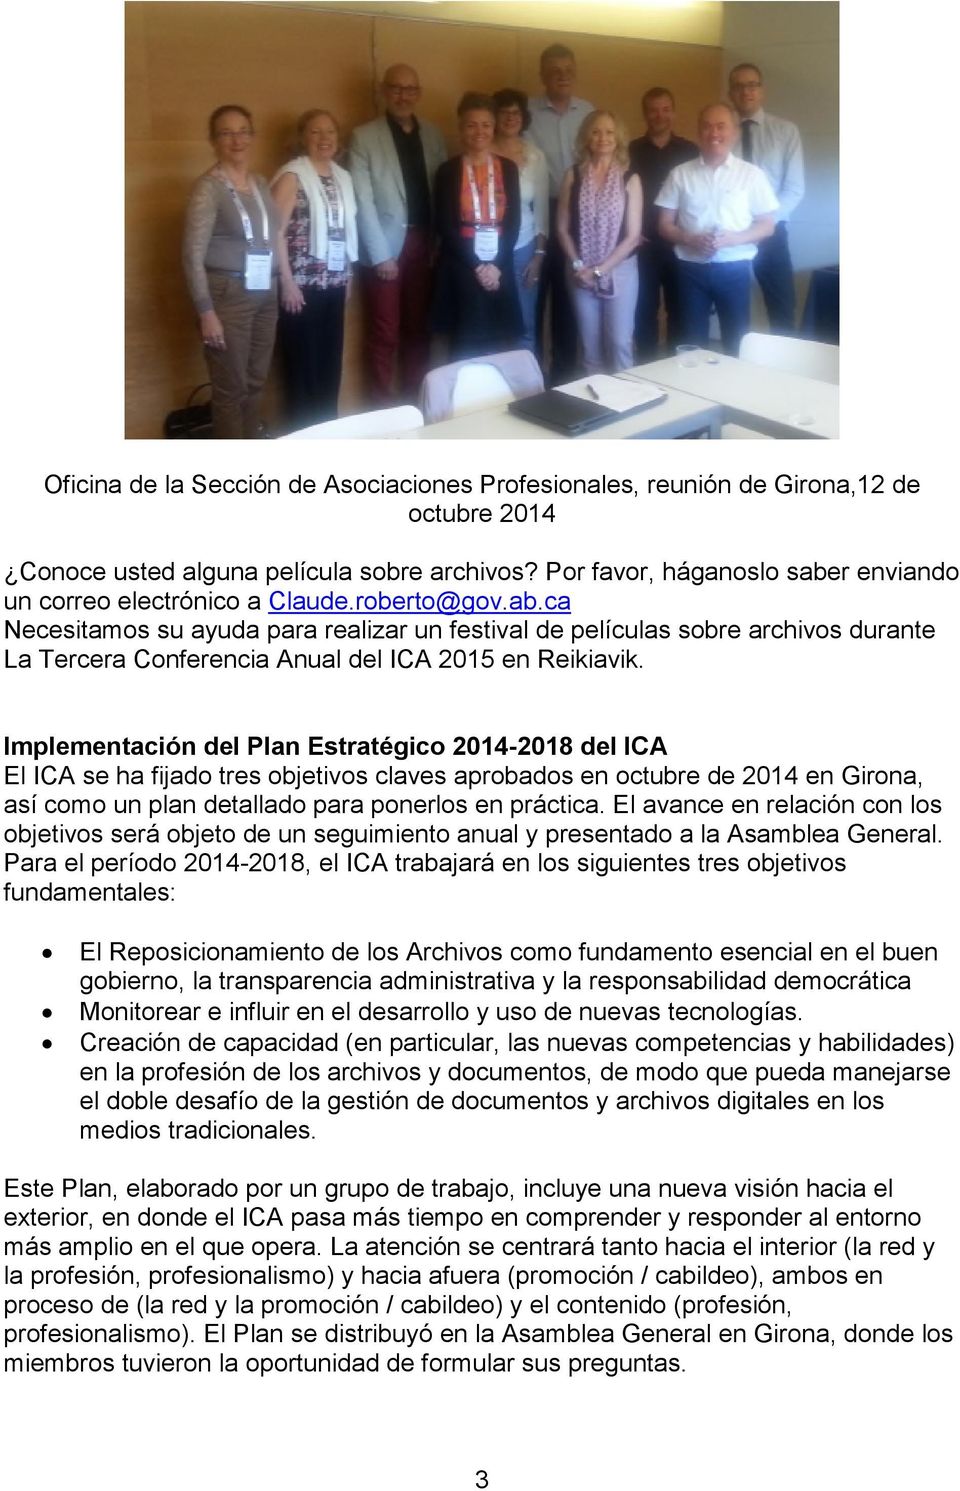 Implementación del Plan Estratégico 2014-2018 del ICA El ICA se ha fijado tres objetivos claves aprobados en octubre de 2014 en Girona, así como un plan detallado para ponerlos en práctica.